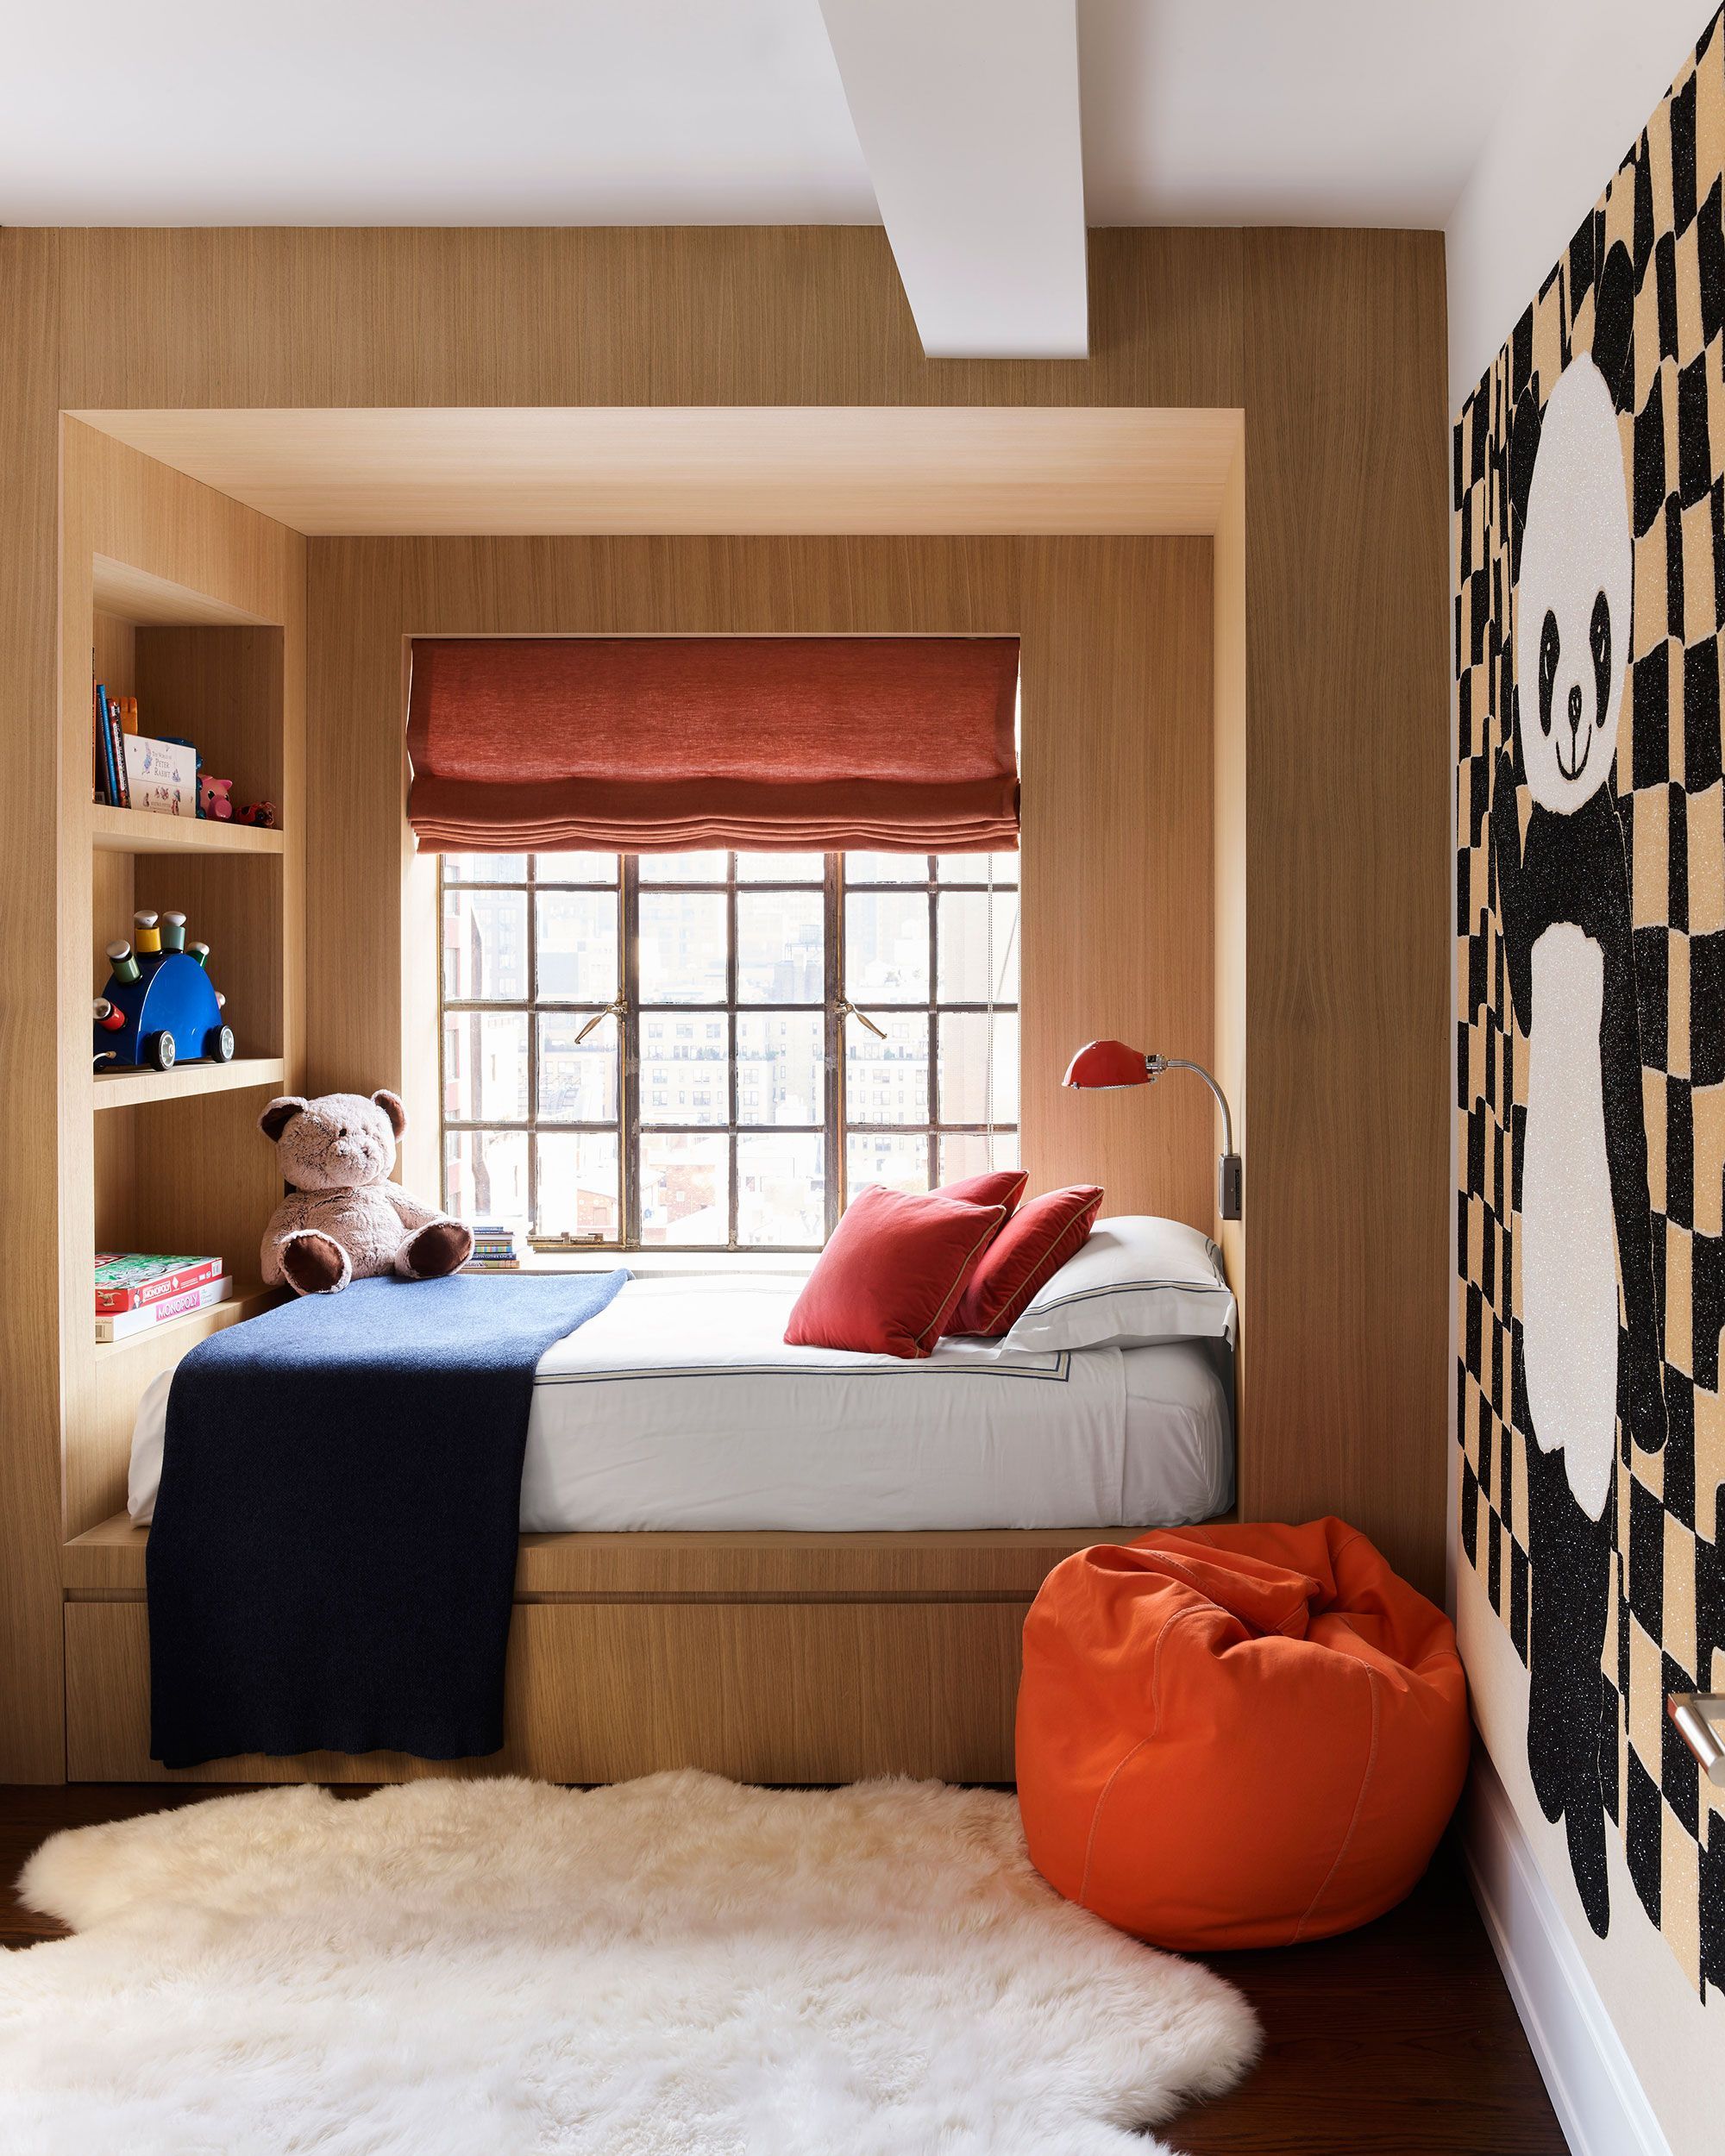 Modern Bedrooms... - Interior Design and Home Decor Ideas | Facebook